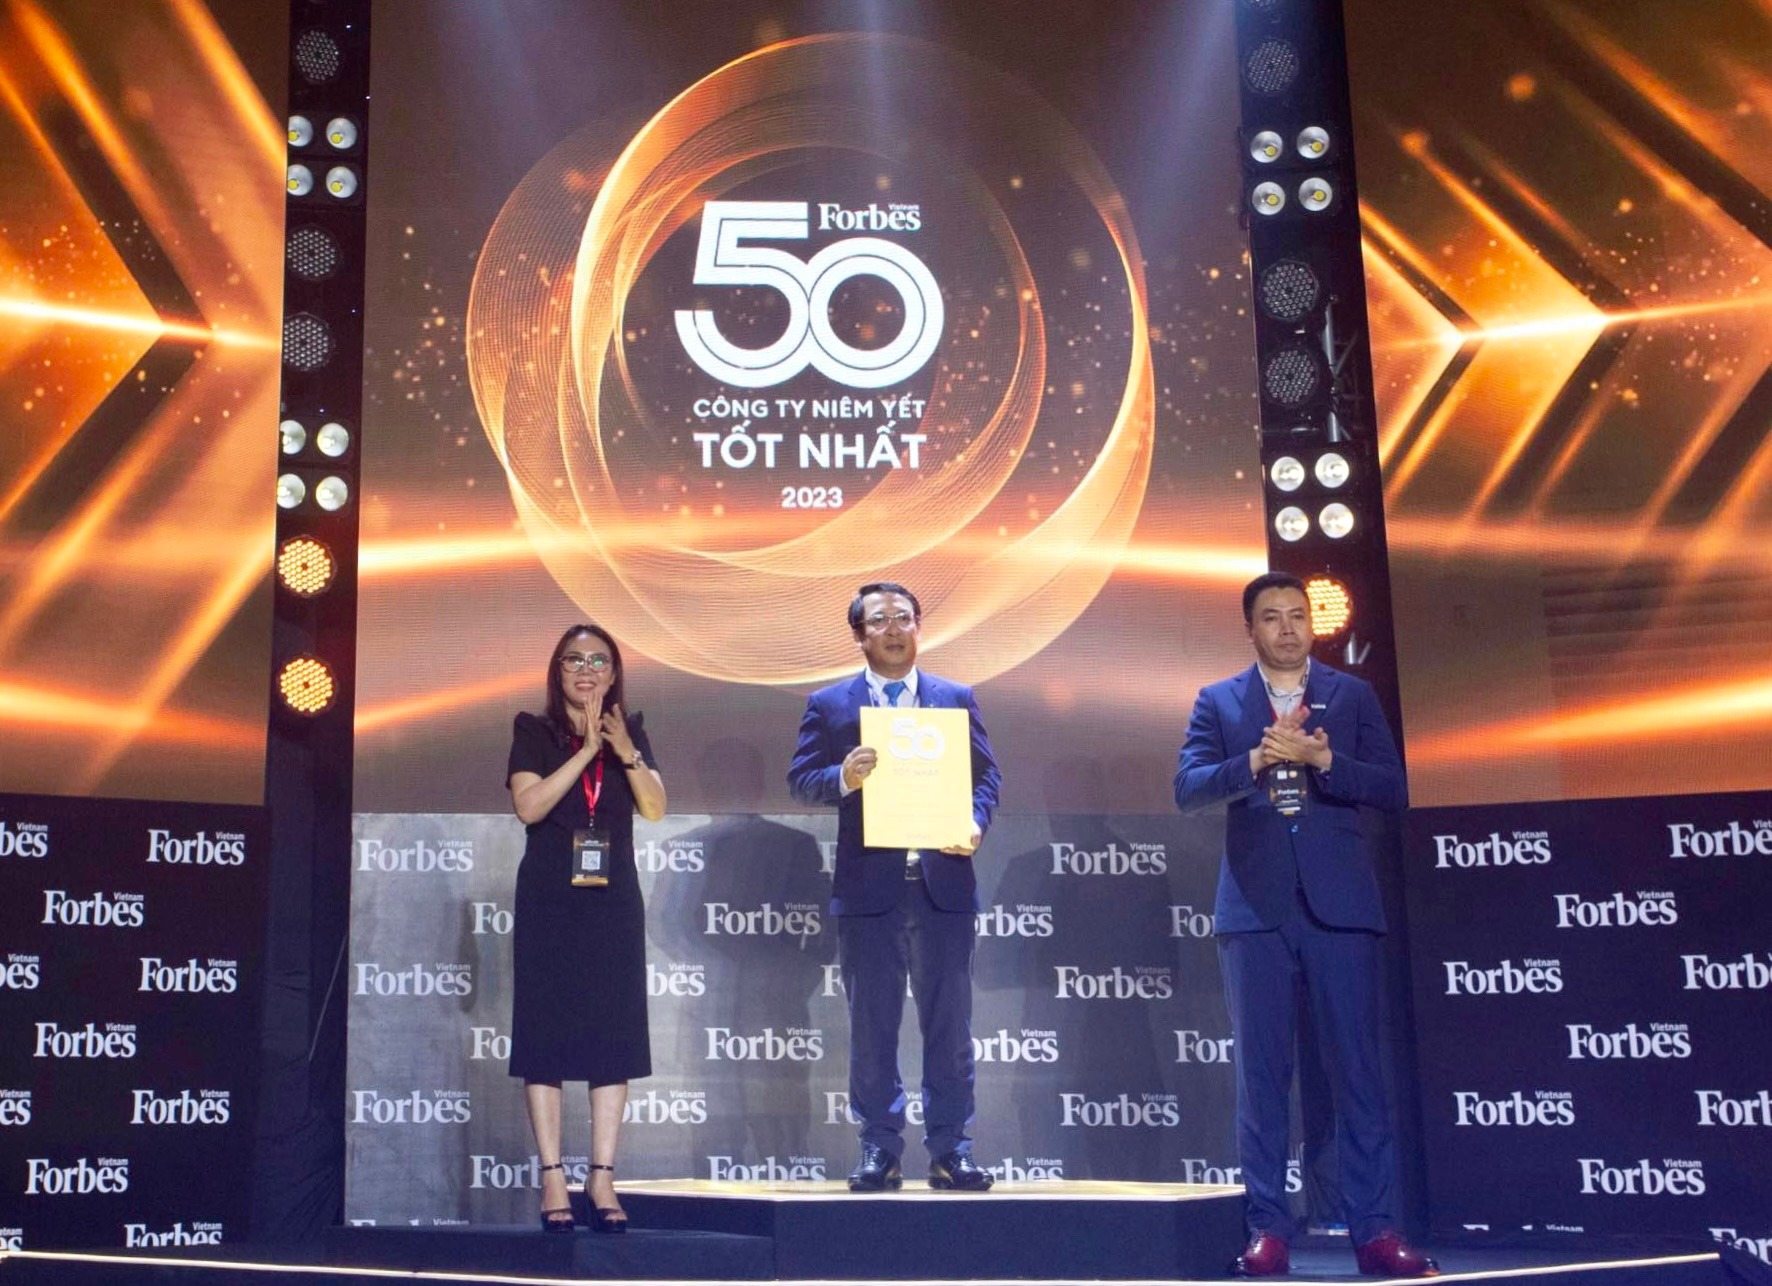 Bảo Việt - 11 năm liên tiếp trong “Danh sách 50 công ty niêm yết tốt nhất” (Forbes)